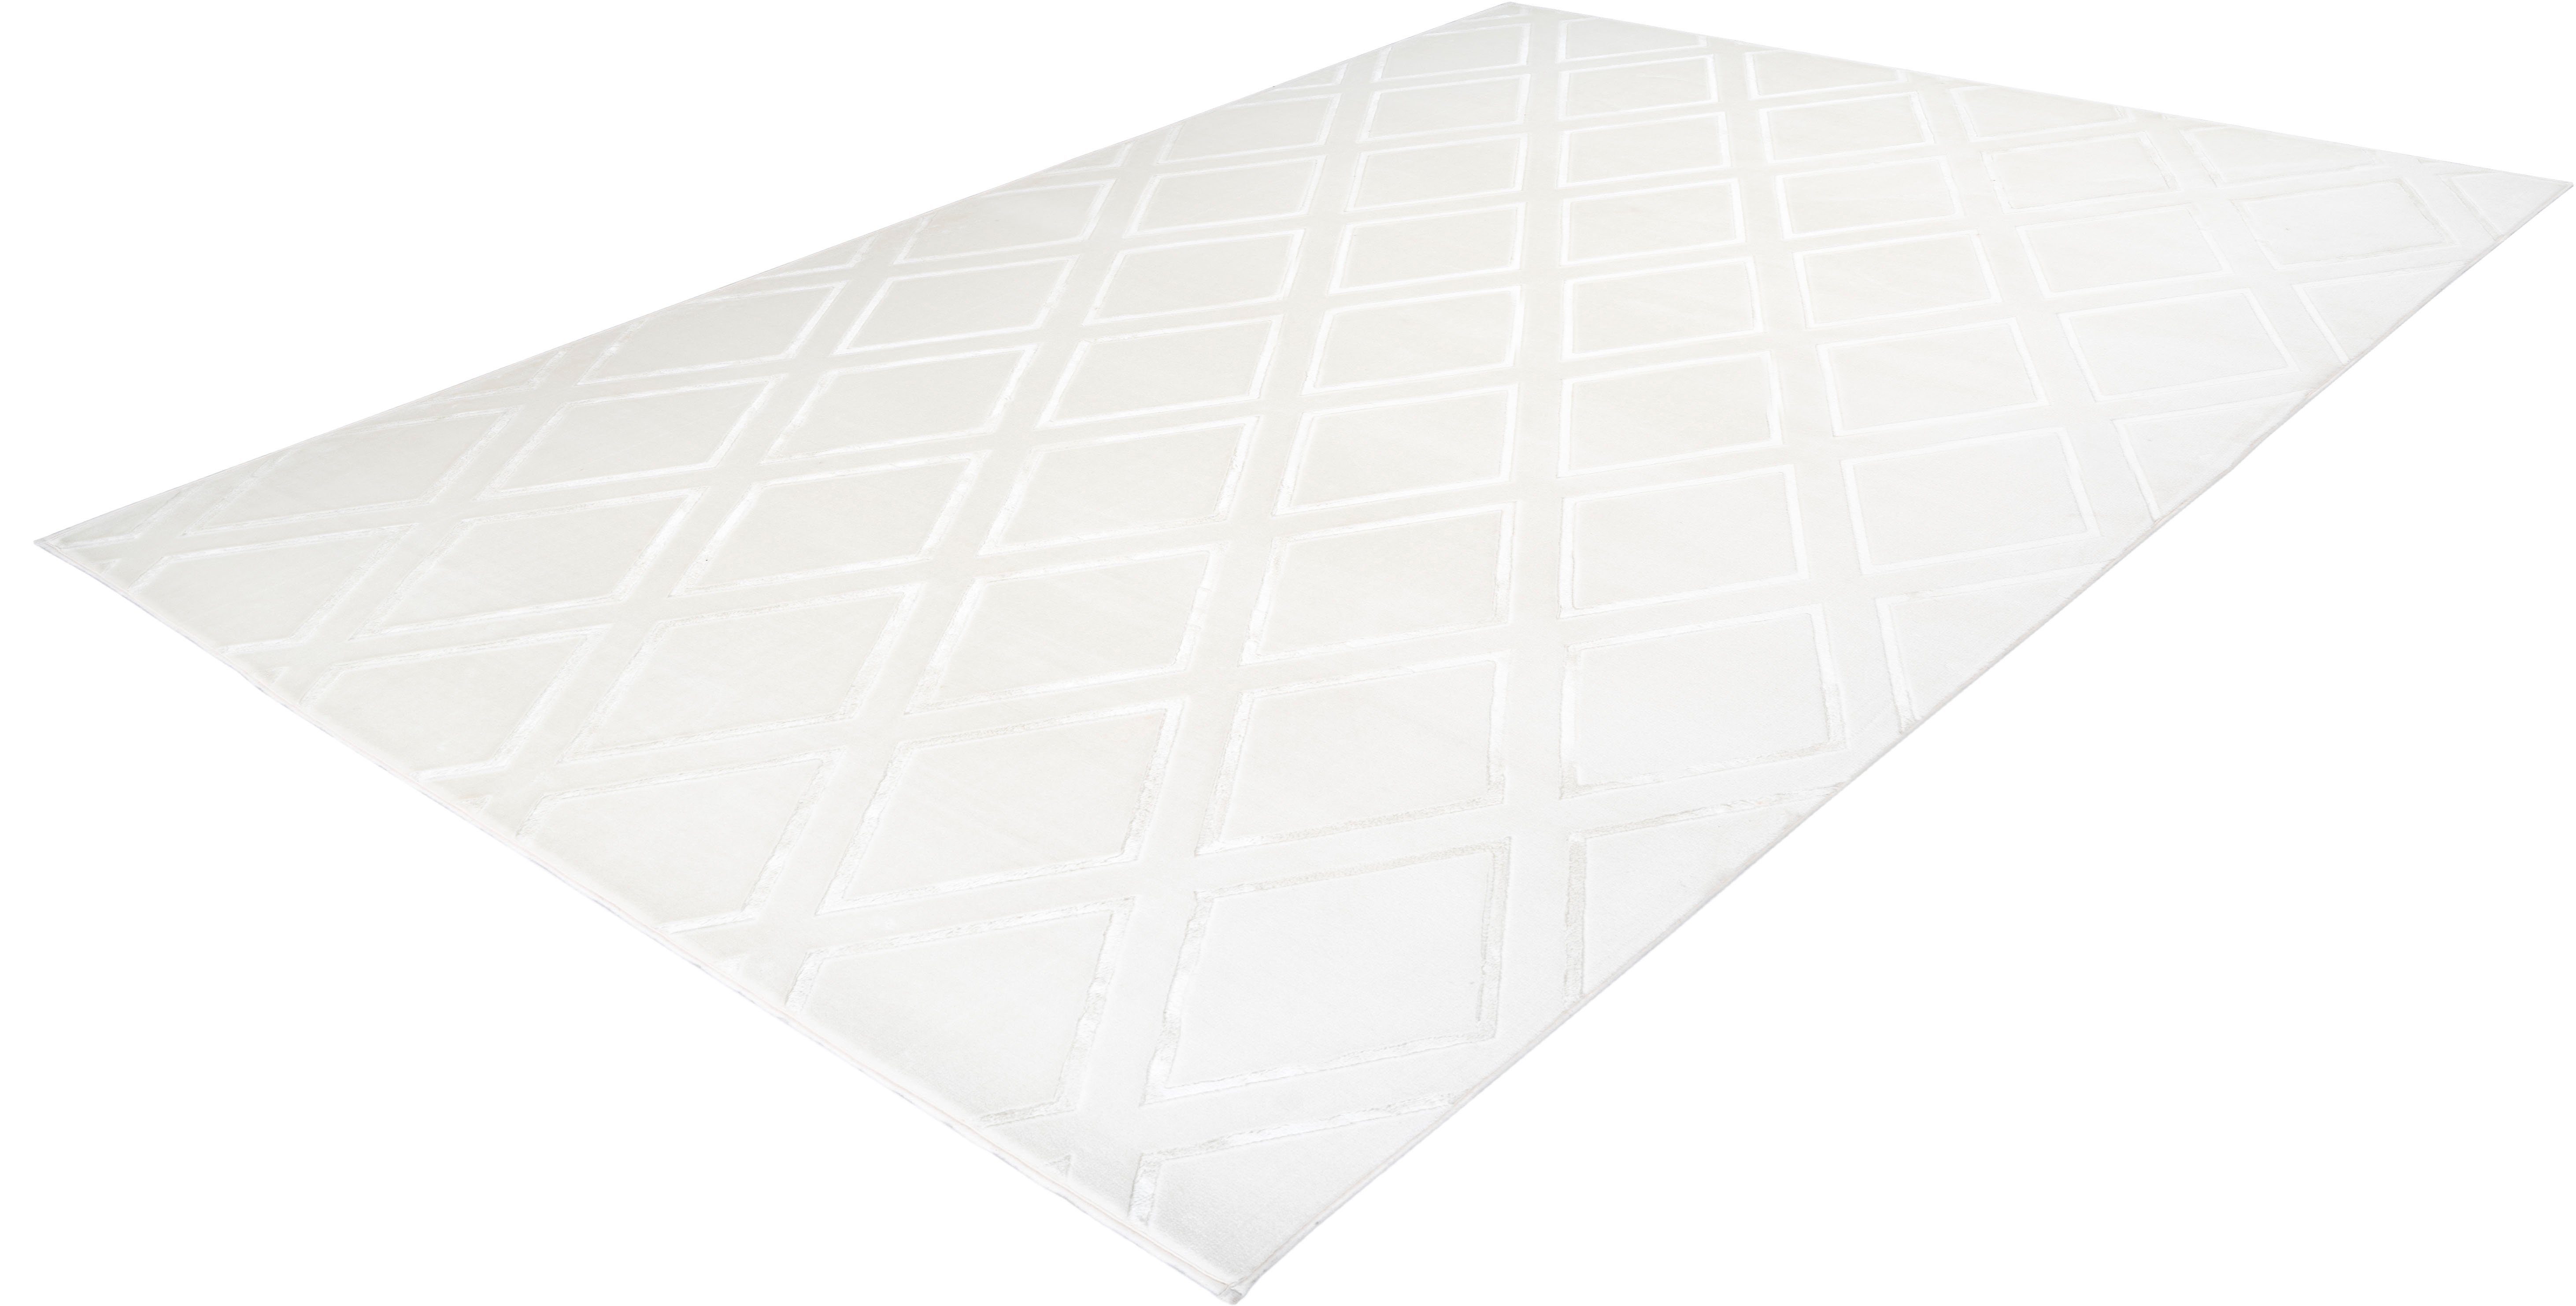 Teppich Monroe 300, Arte Espina, rechteckig, Höhe: 7 mm, besonders weich durch Microfaser, Wohnzimmer